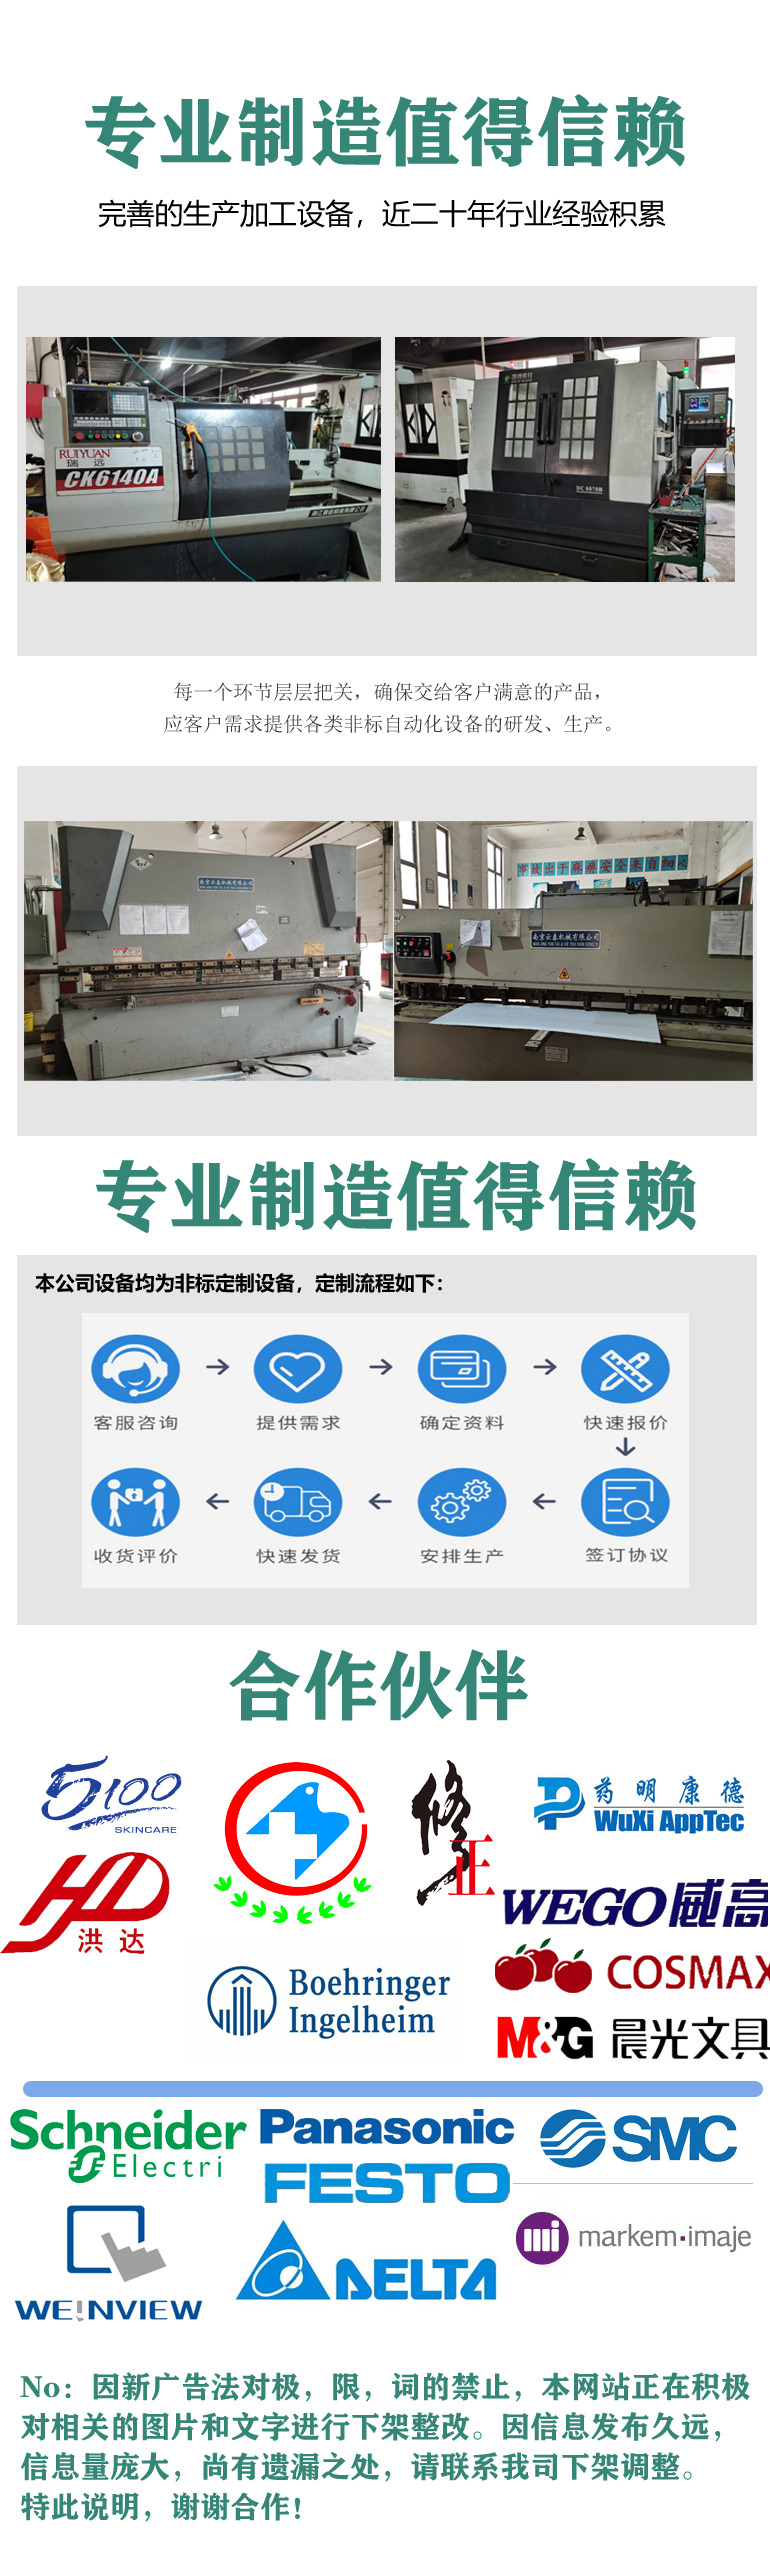 上海生产核酸试剂灌装机价格